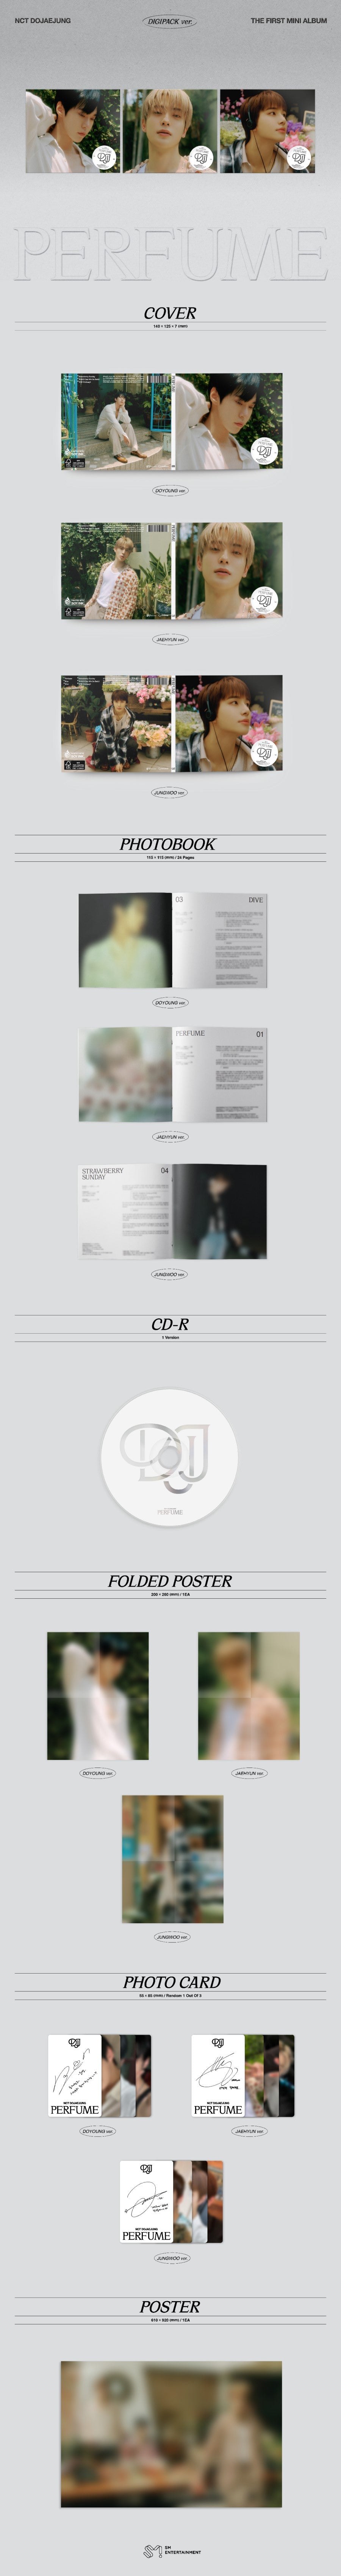 NCT DOJAEJUNG Mini Album Vol. 1 - PERFUME (Digipack Version) (Random Version)